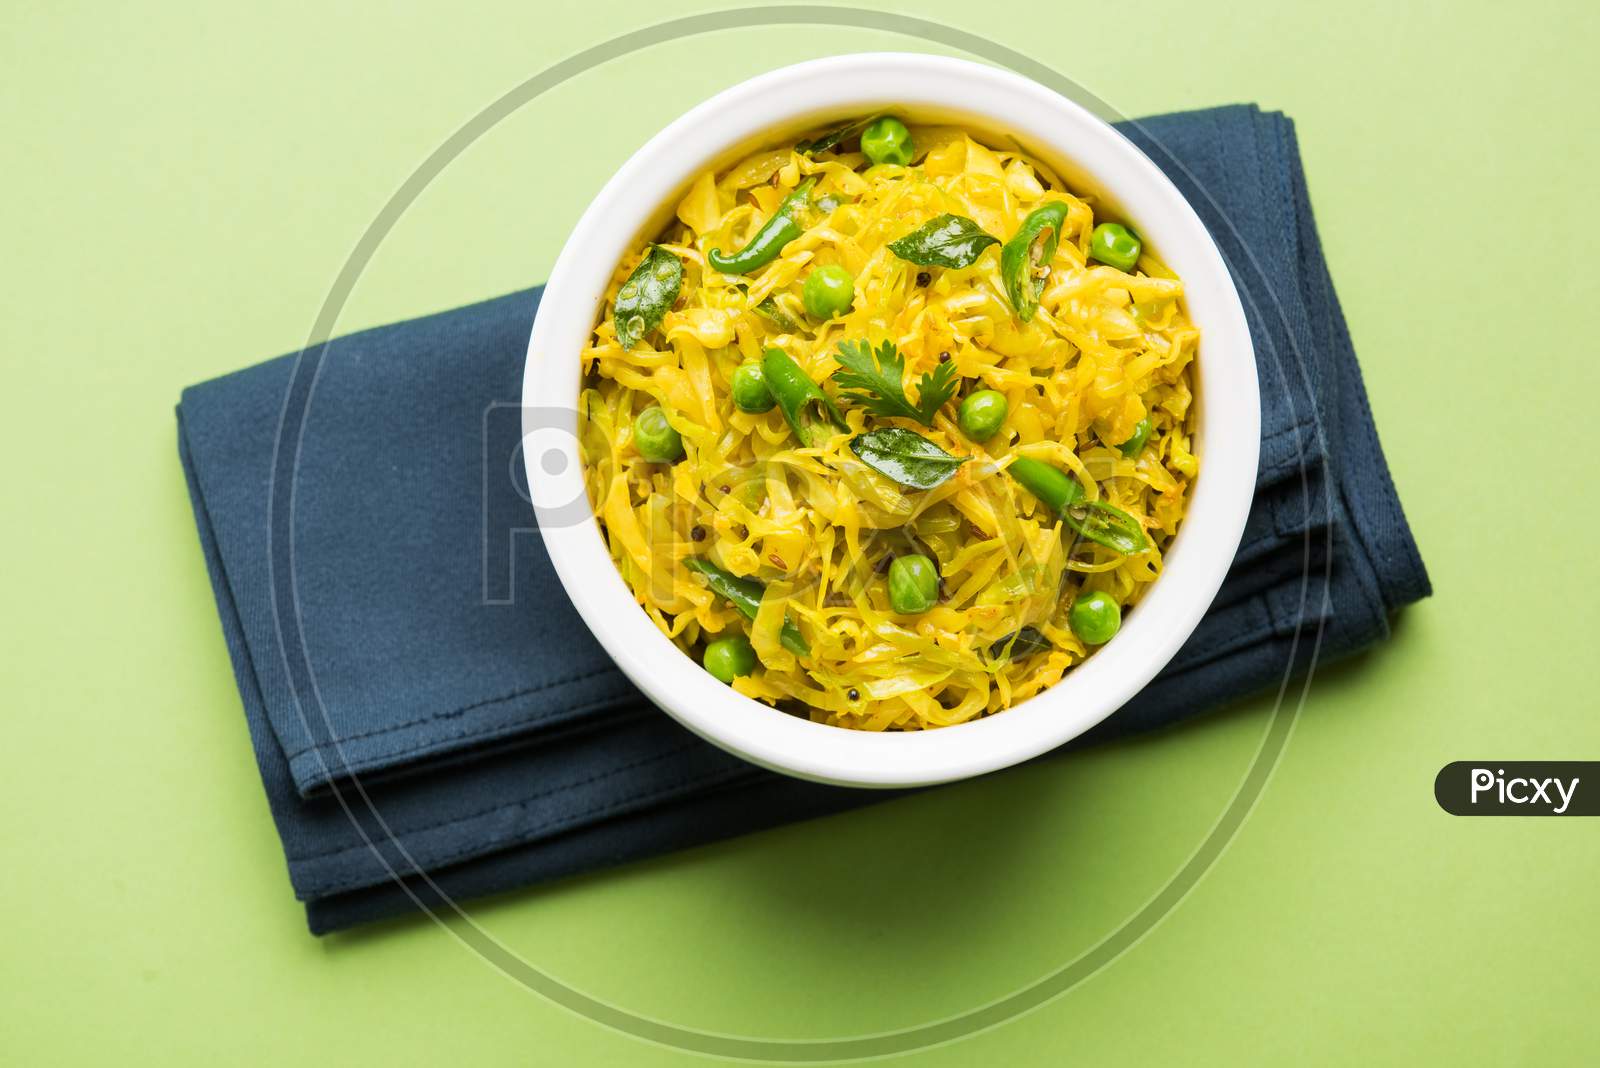 Cabbage OR Patta Gobi Sabji / Curry